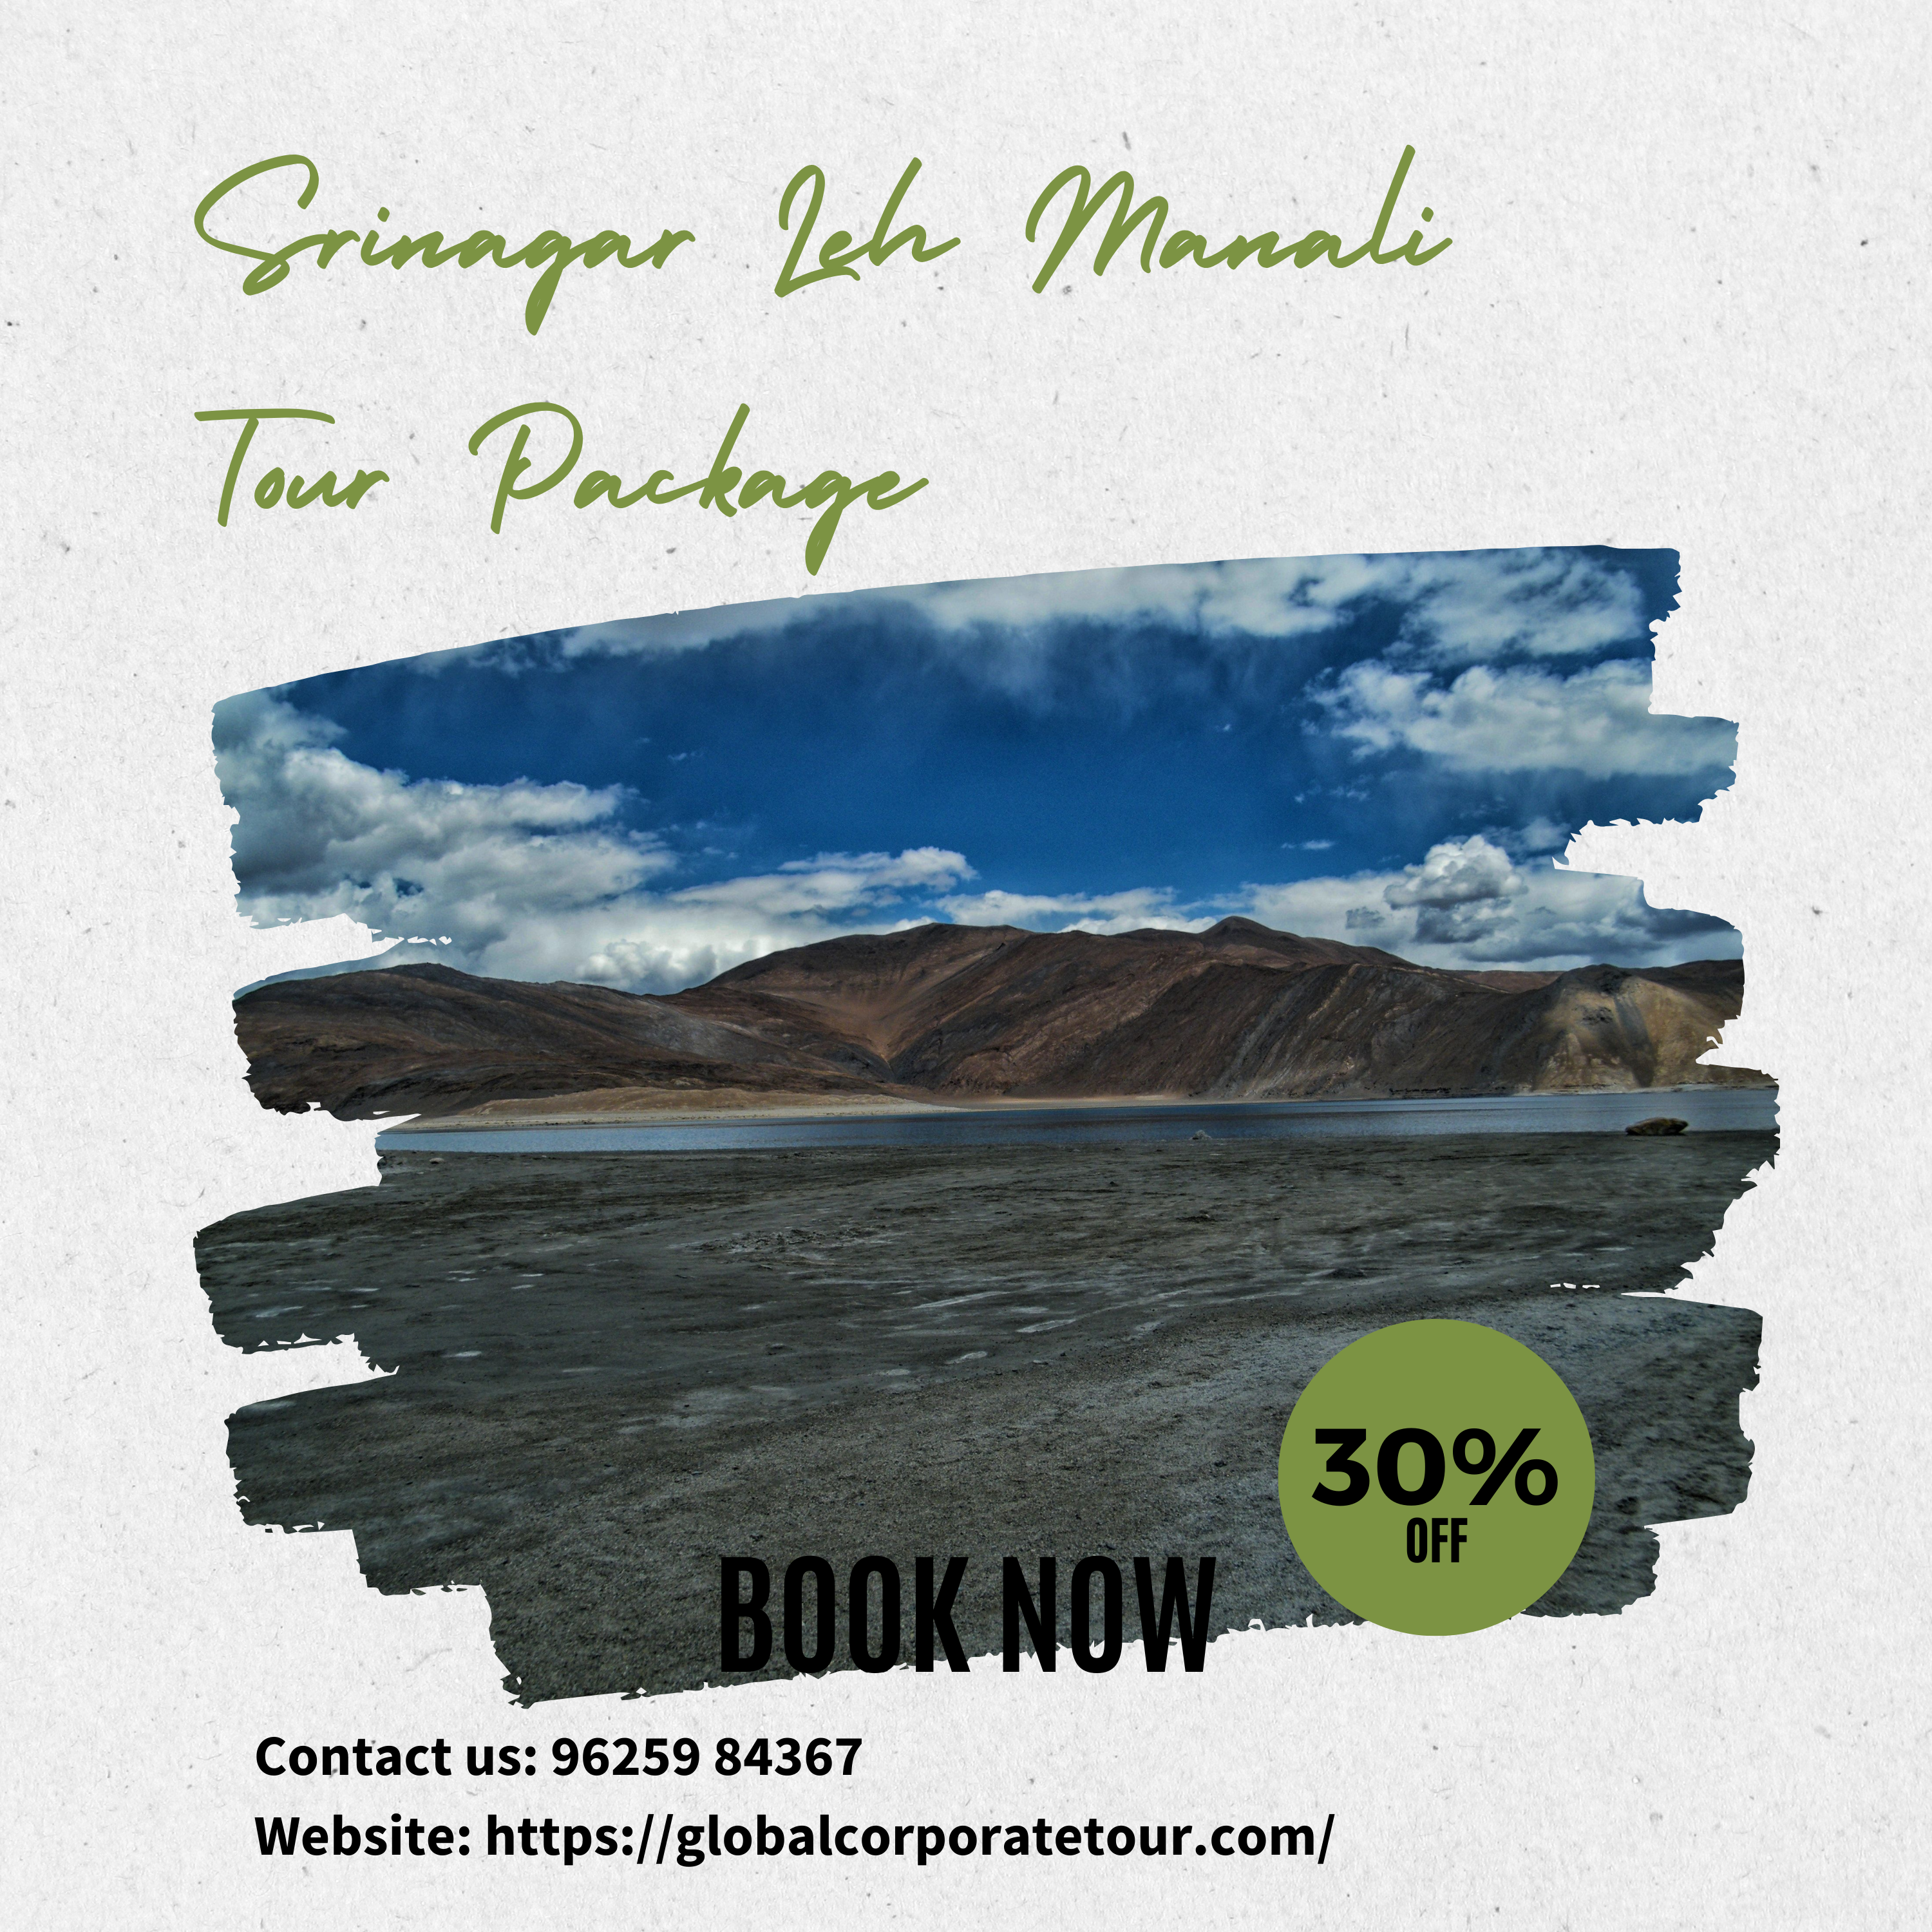 Srinagar Leh Manali Tour Package